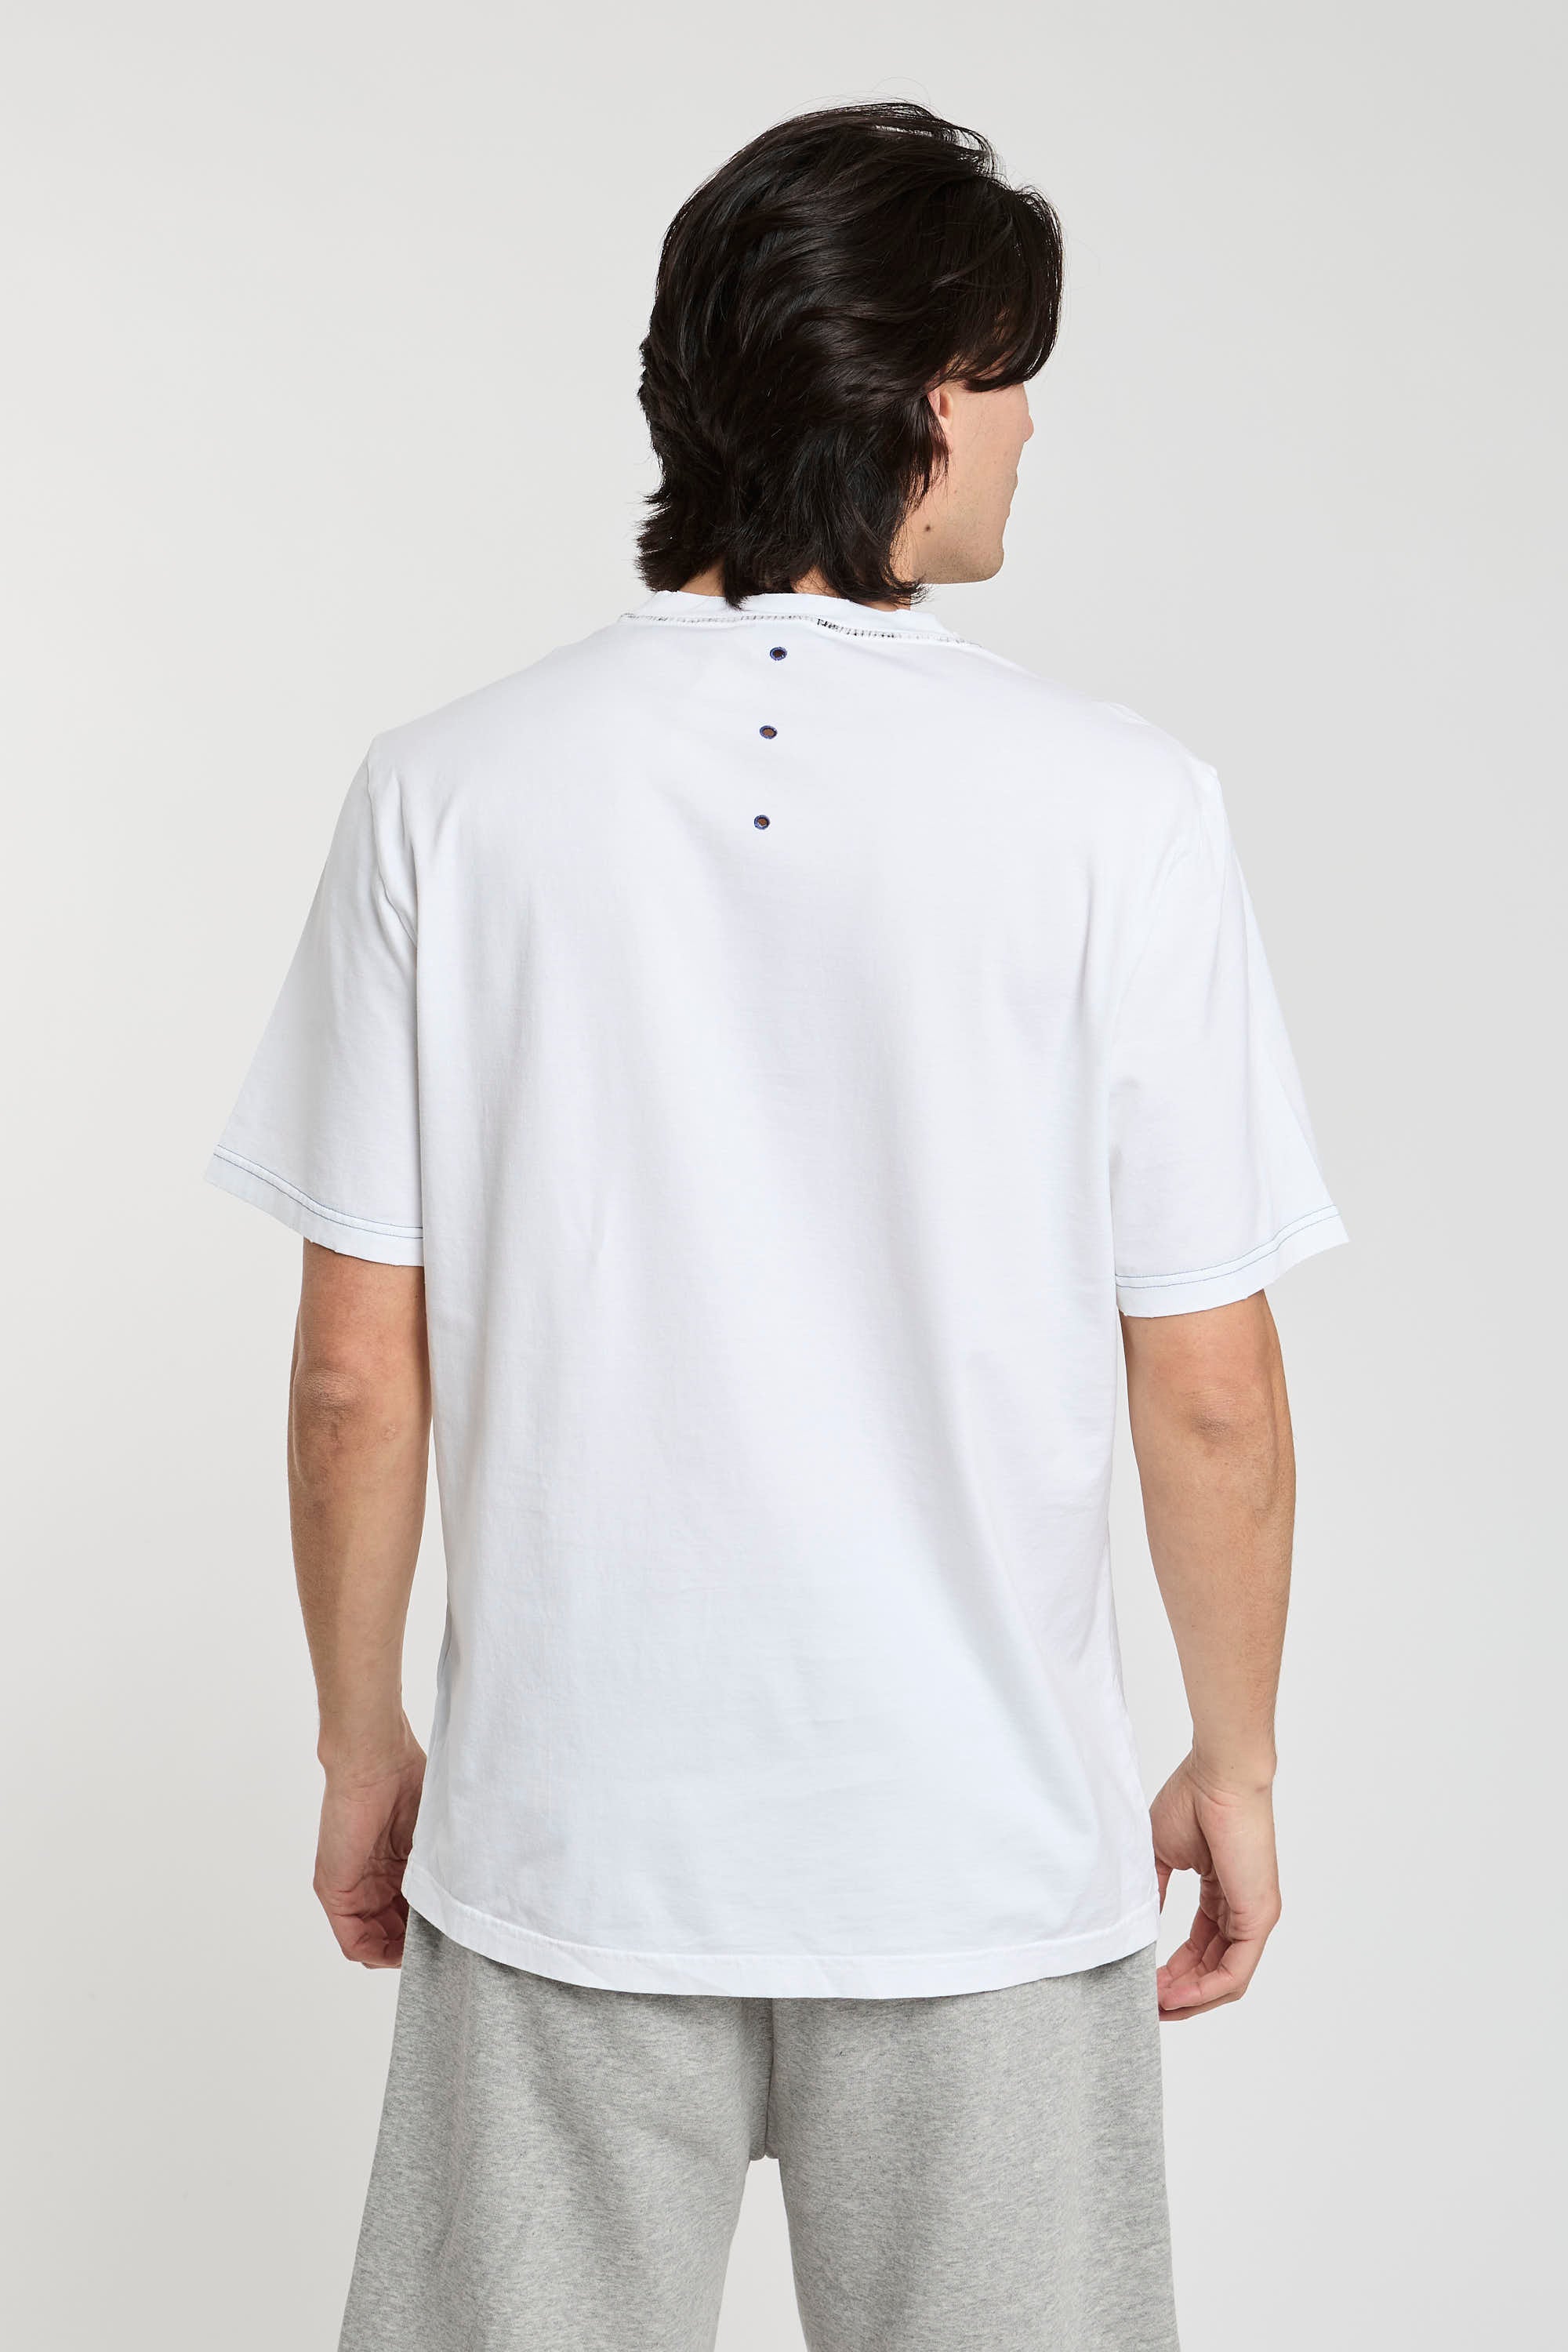 Premiata T-Shirt 'Never White' in White Cotton-4